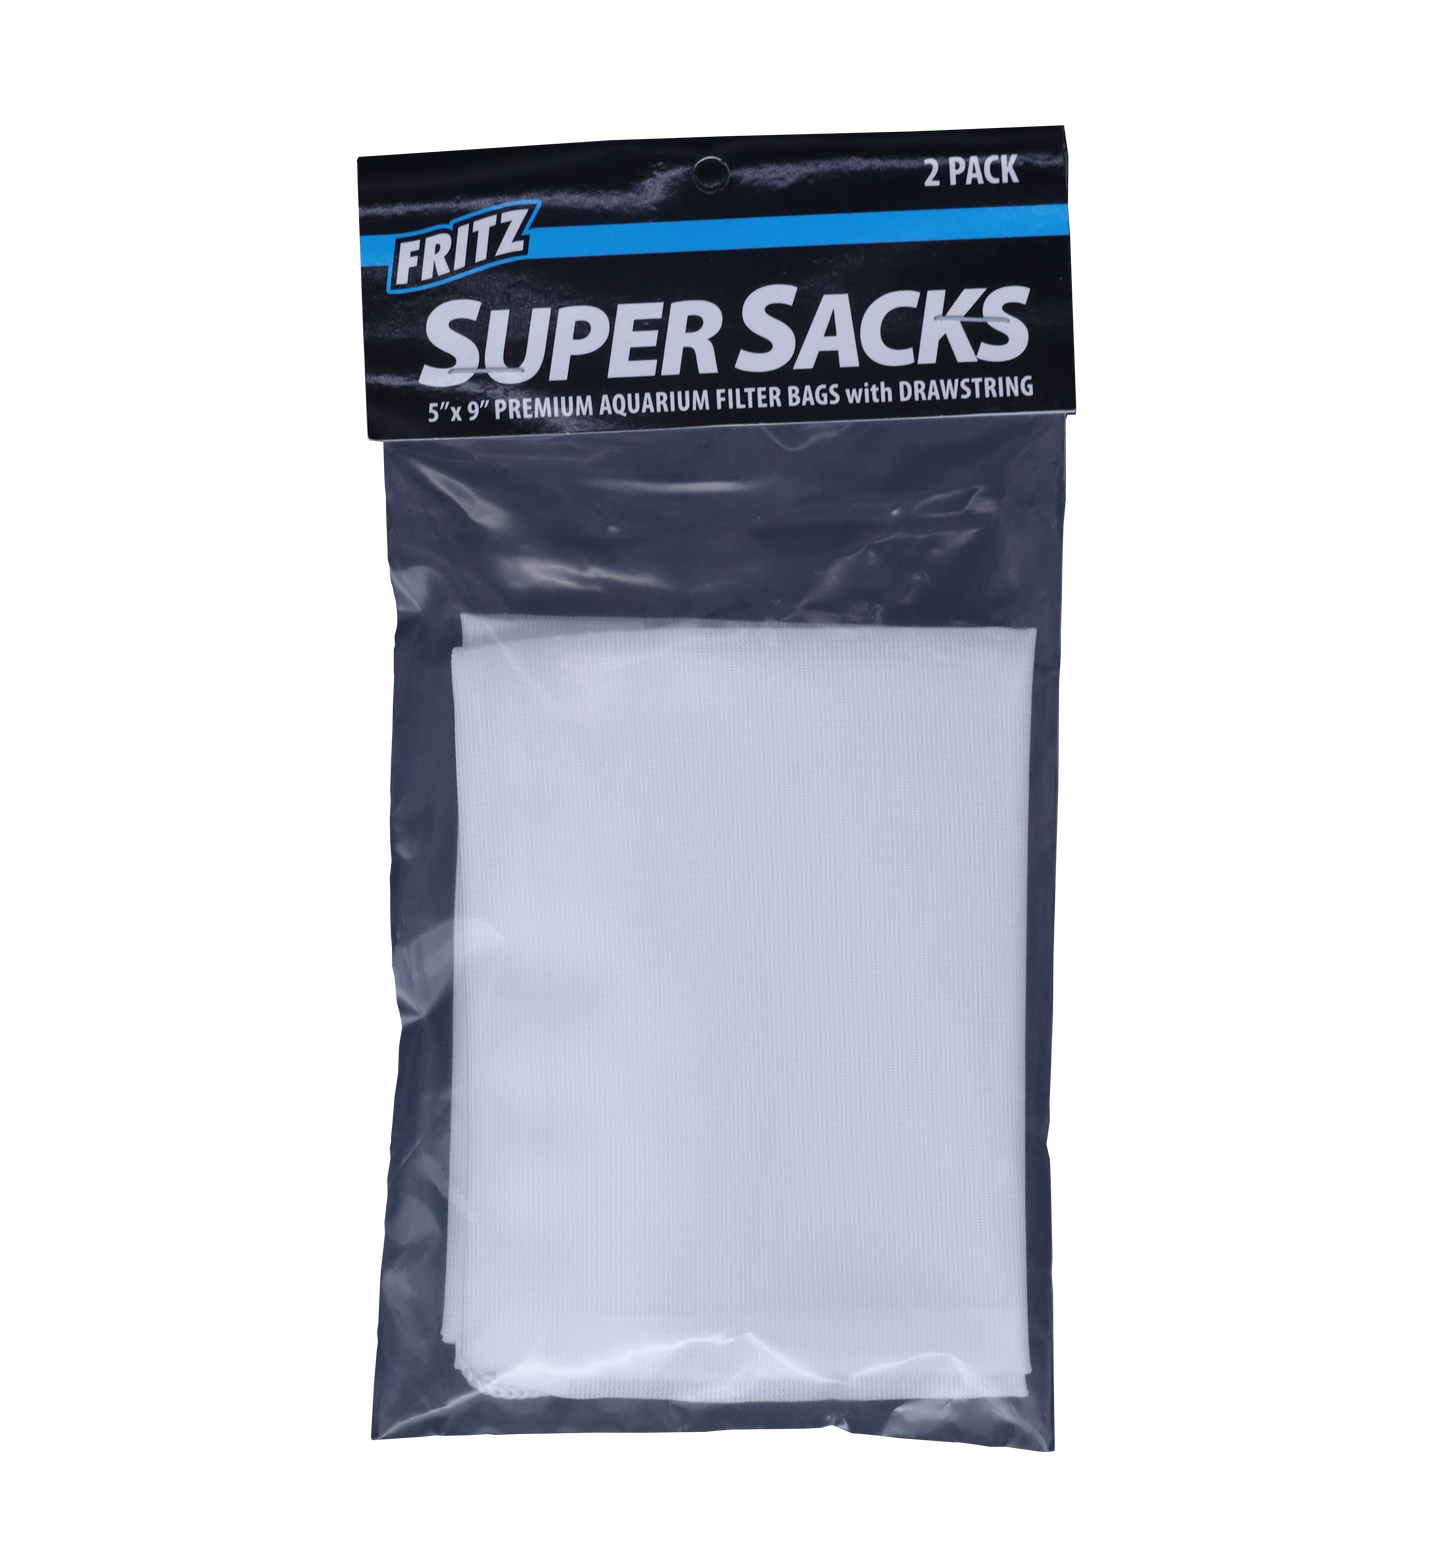 Super Sacks - Filter Bags